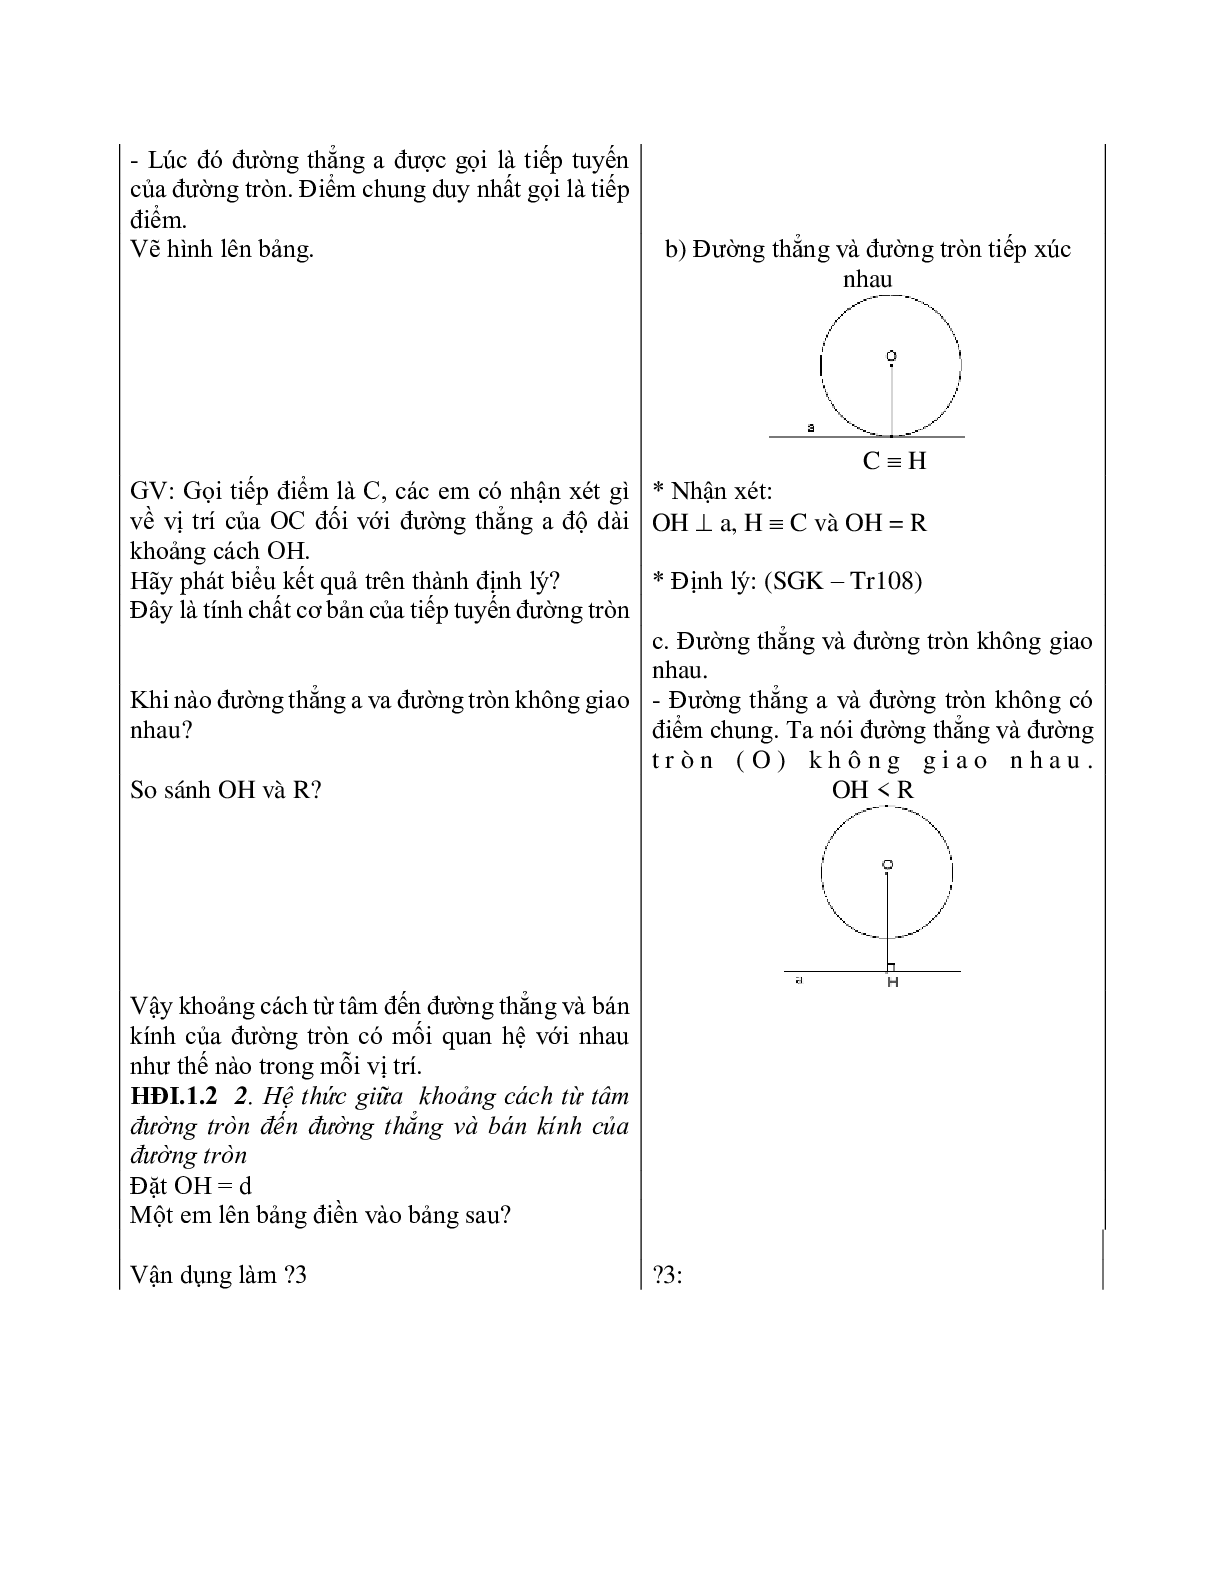 Giáo án Hình học 9 chương 2 bài 4: Vị trí tương đối của đường thẳng và đường tròn mới nhất (trang 6)